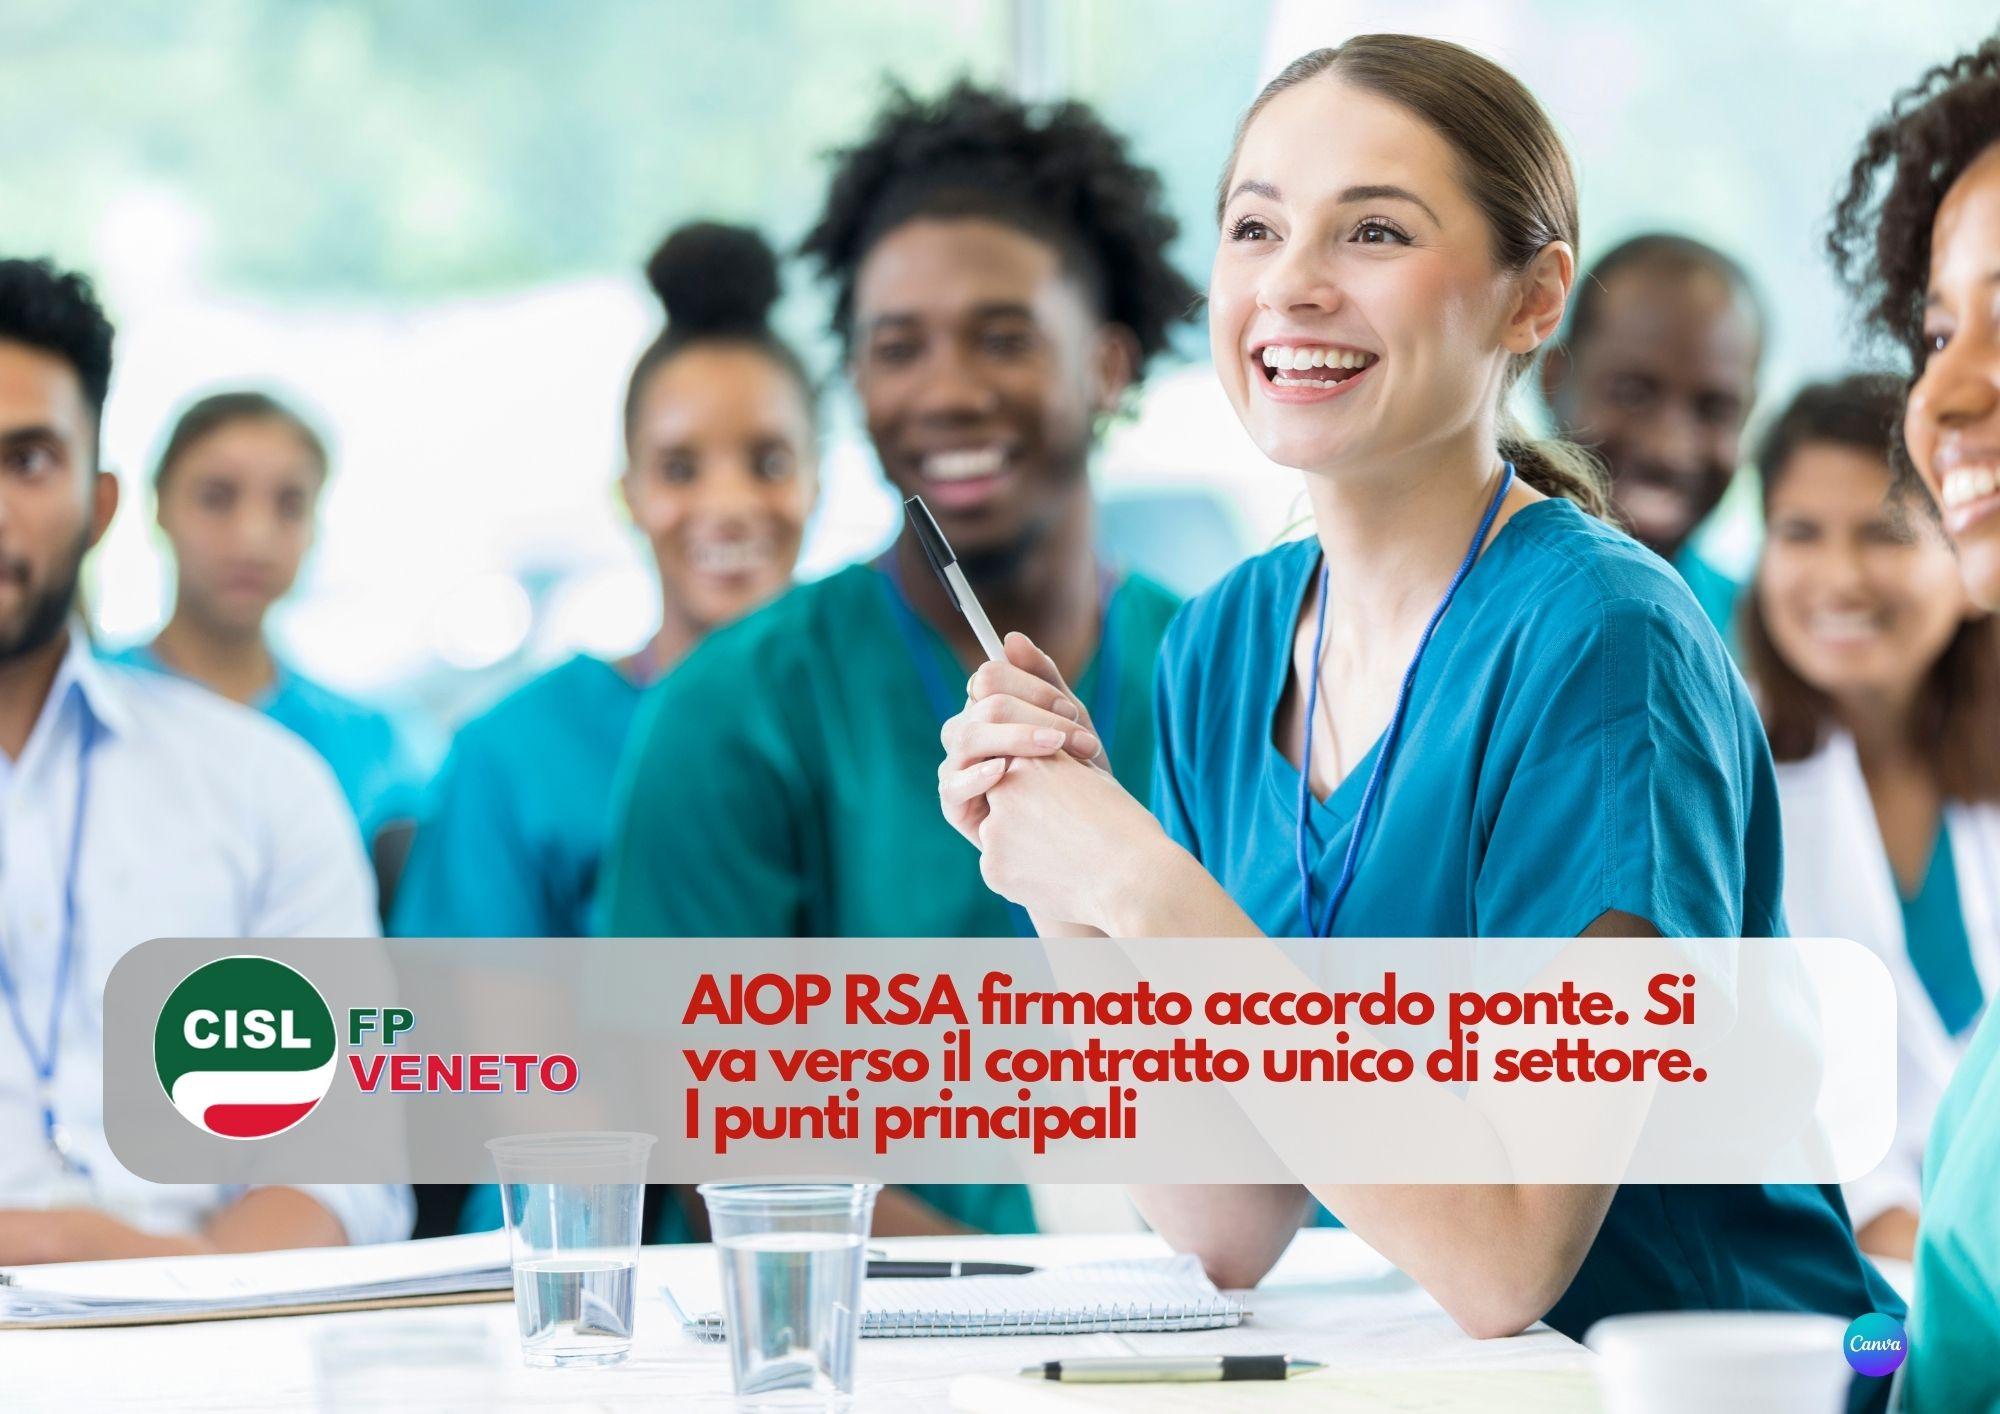 CISL FP Veneto. AIOP RSA firmato accordo ponte. Si va verso il contratto unico di settore. I punti principali